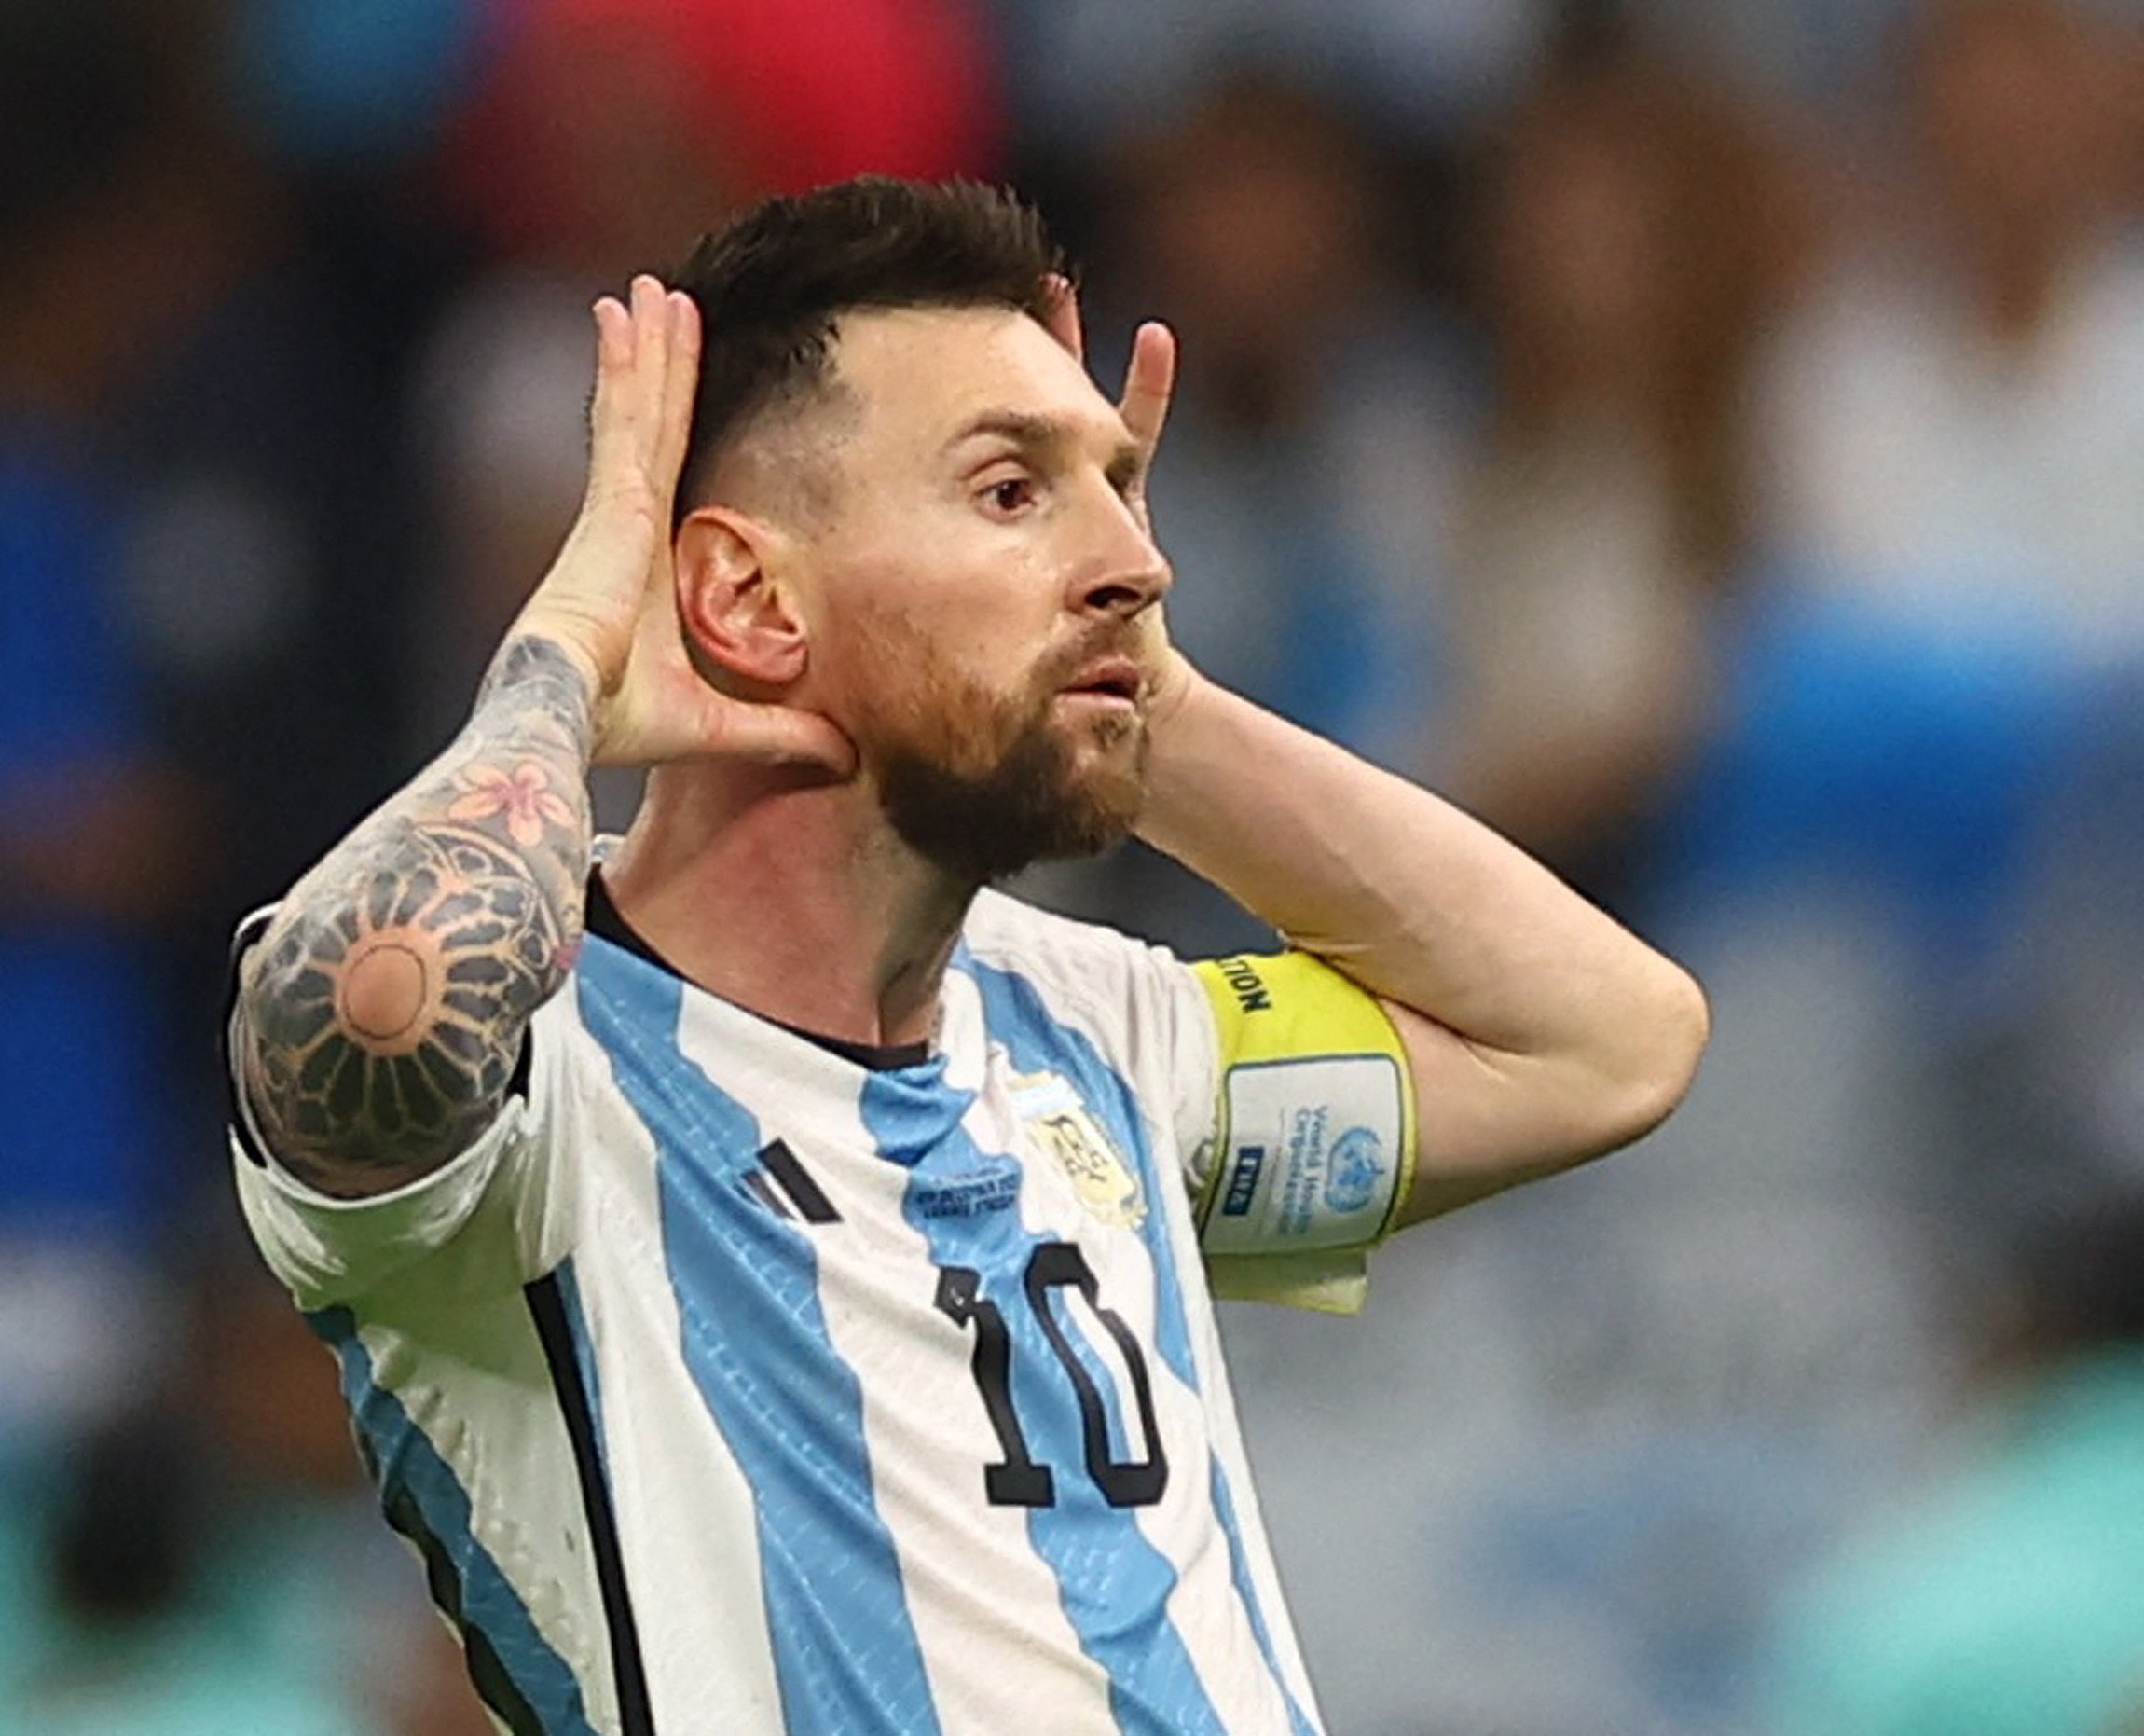           Dự đoán tỷ số tuyển Argentina vs tuyển Croatia (2 giờ, 14.12), bán kết World Cup 2022         